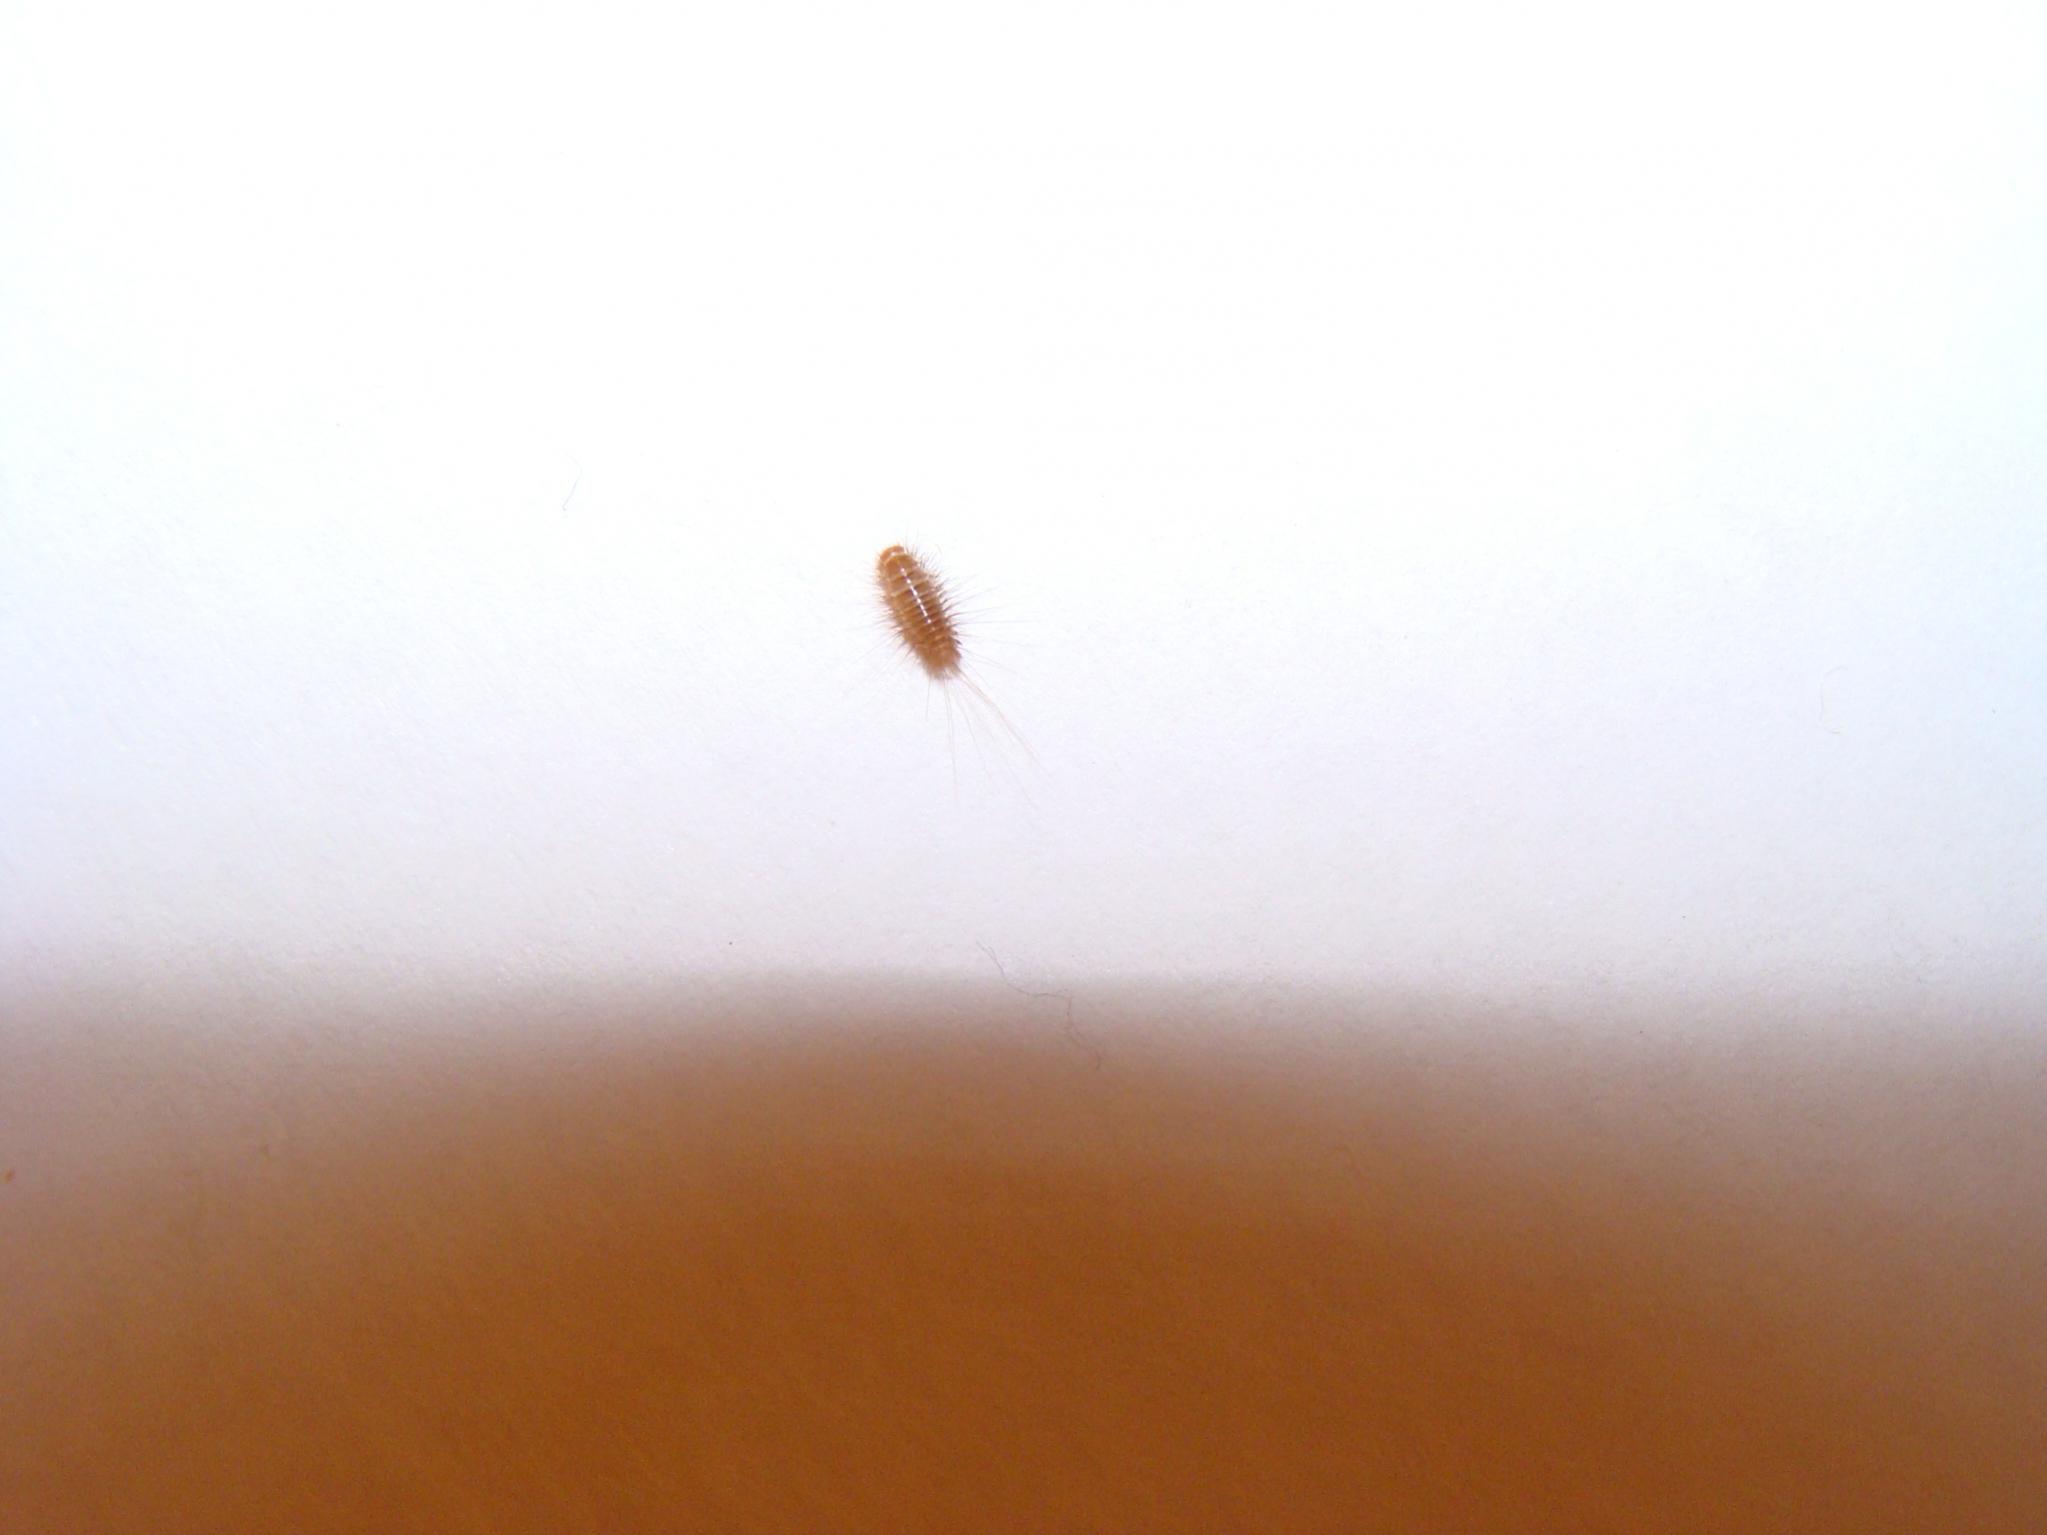 Der wohnung braune würmer in kleine braune